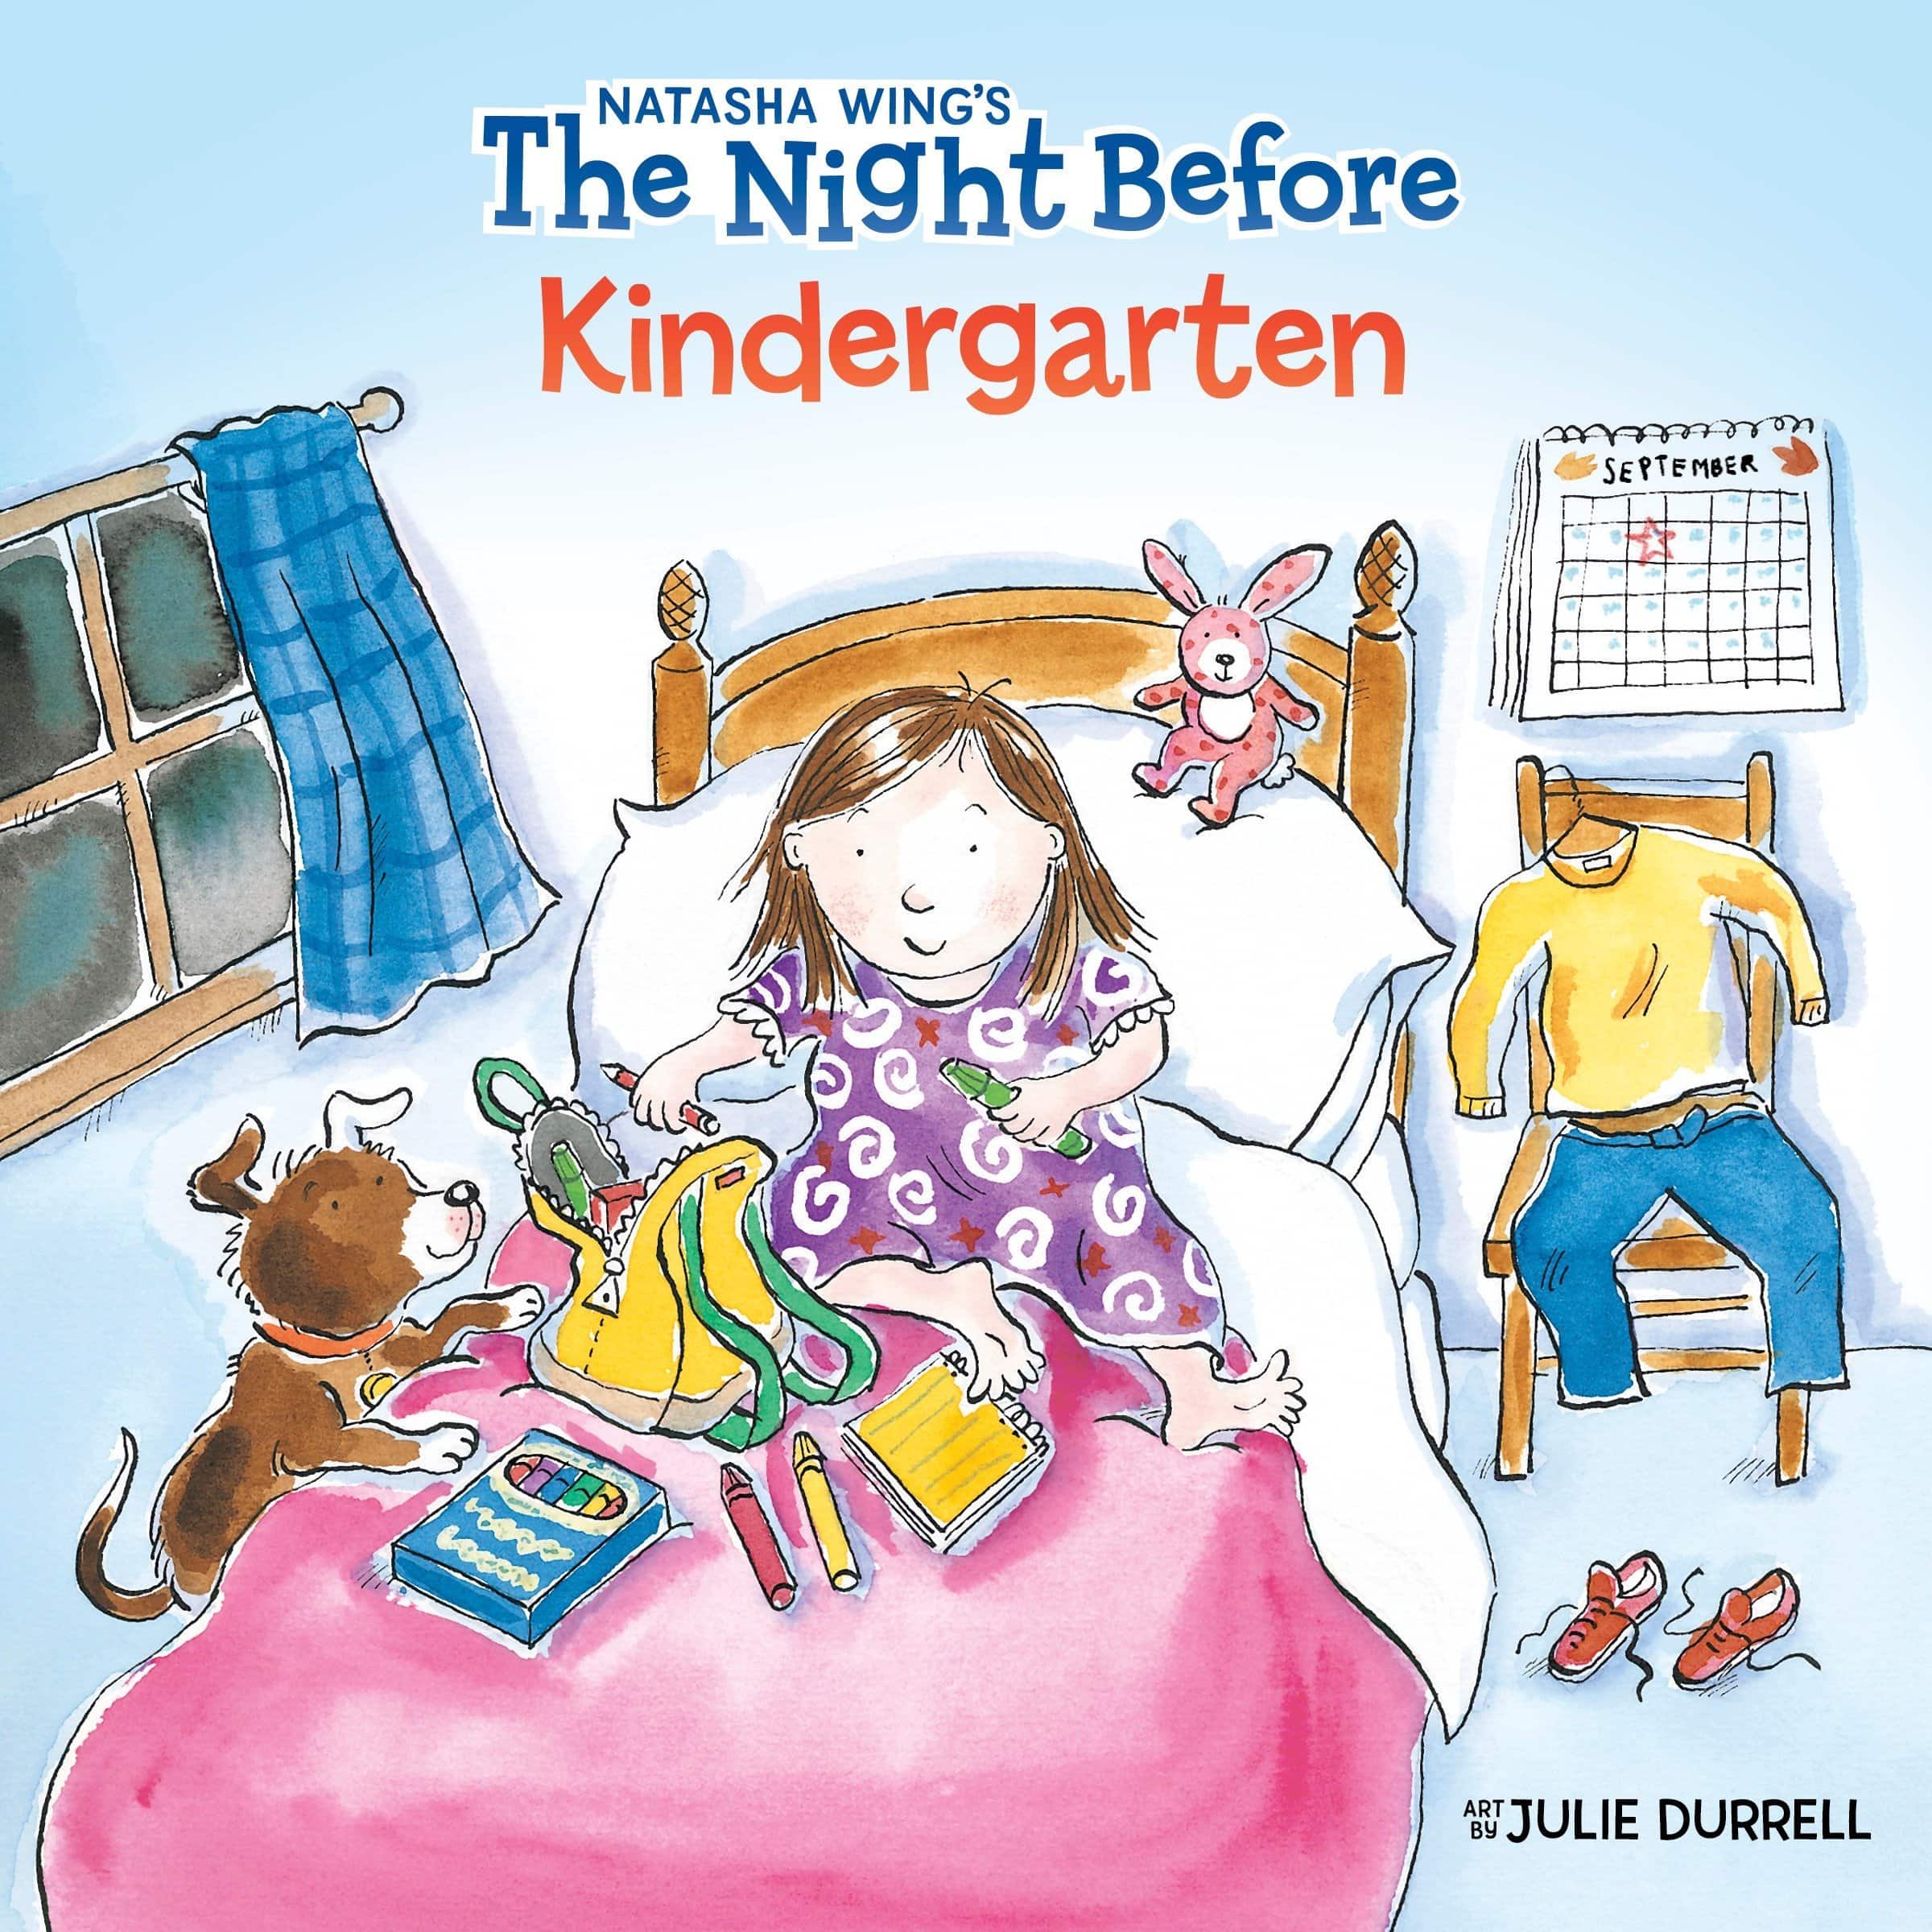 "The Night Before Kindergarten" by Natasha Wing